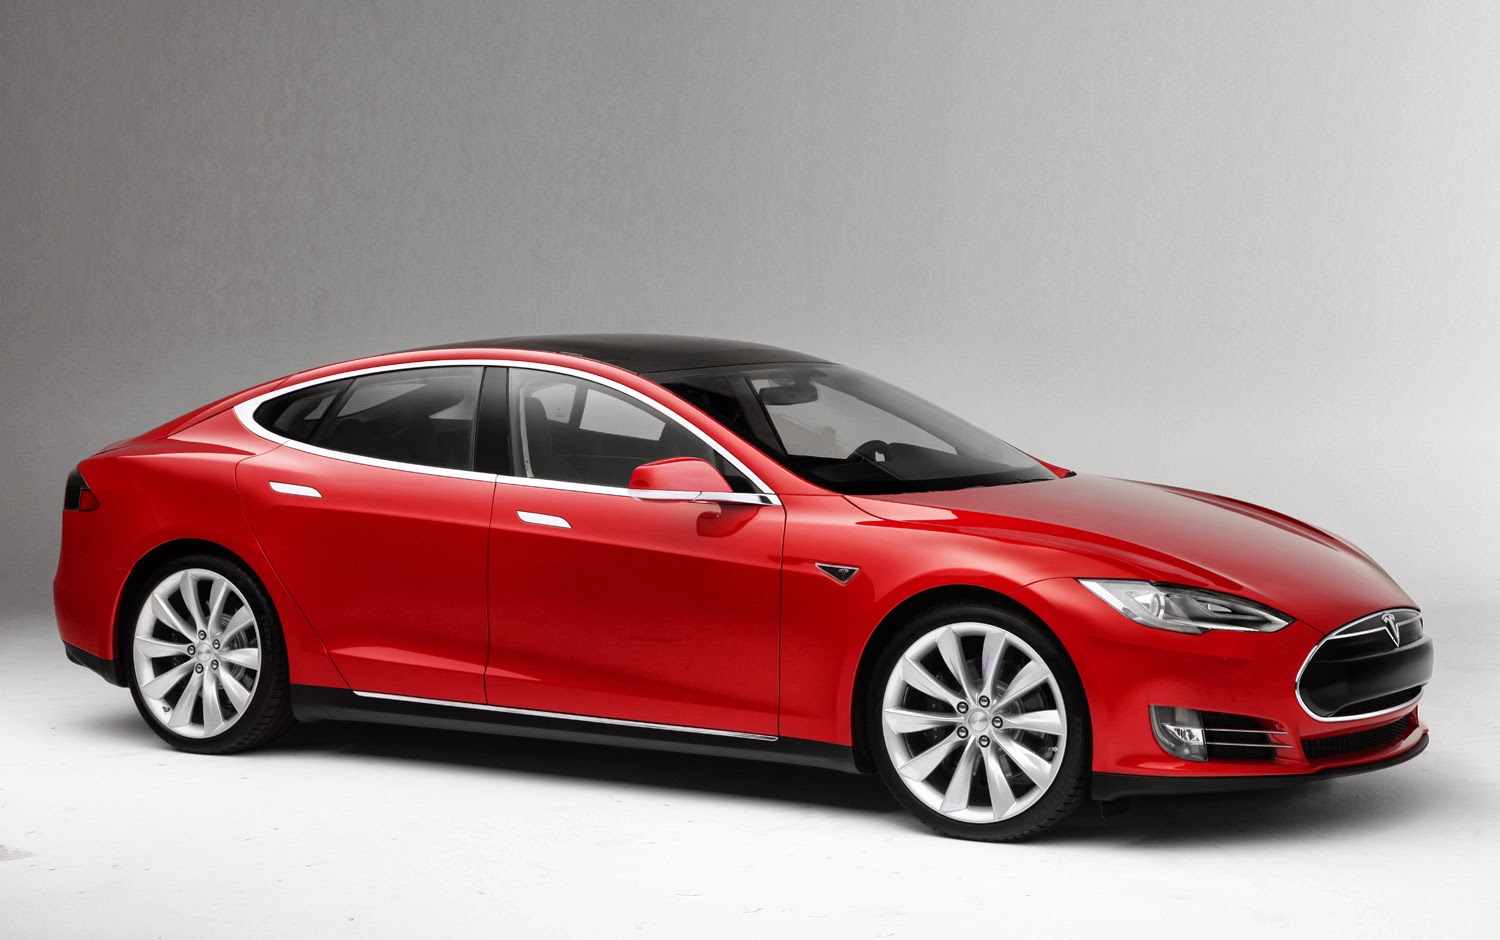 New Car Models: 2013 Tesla model s